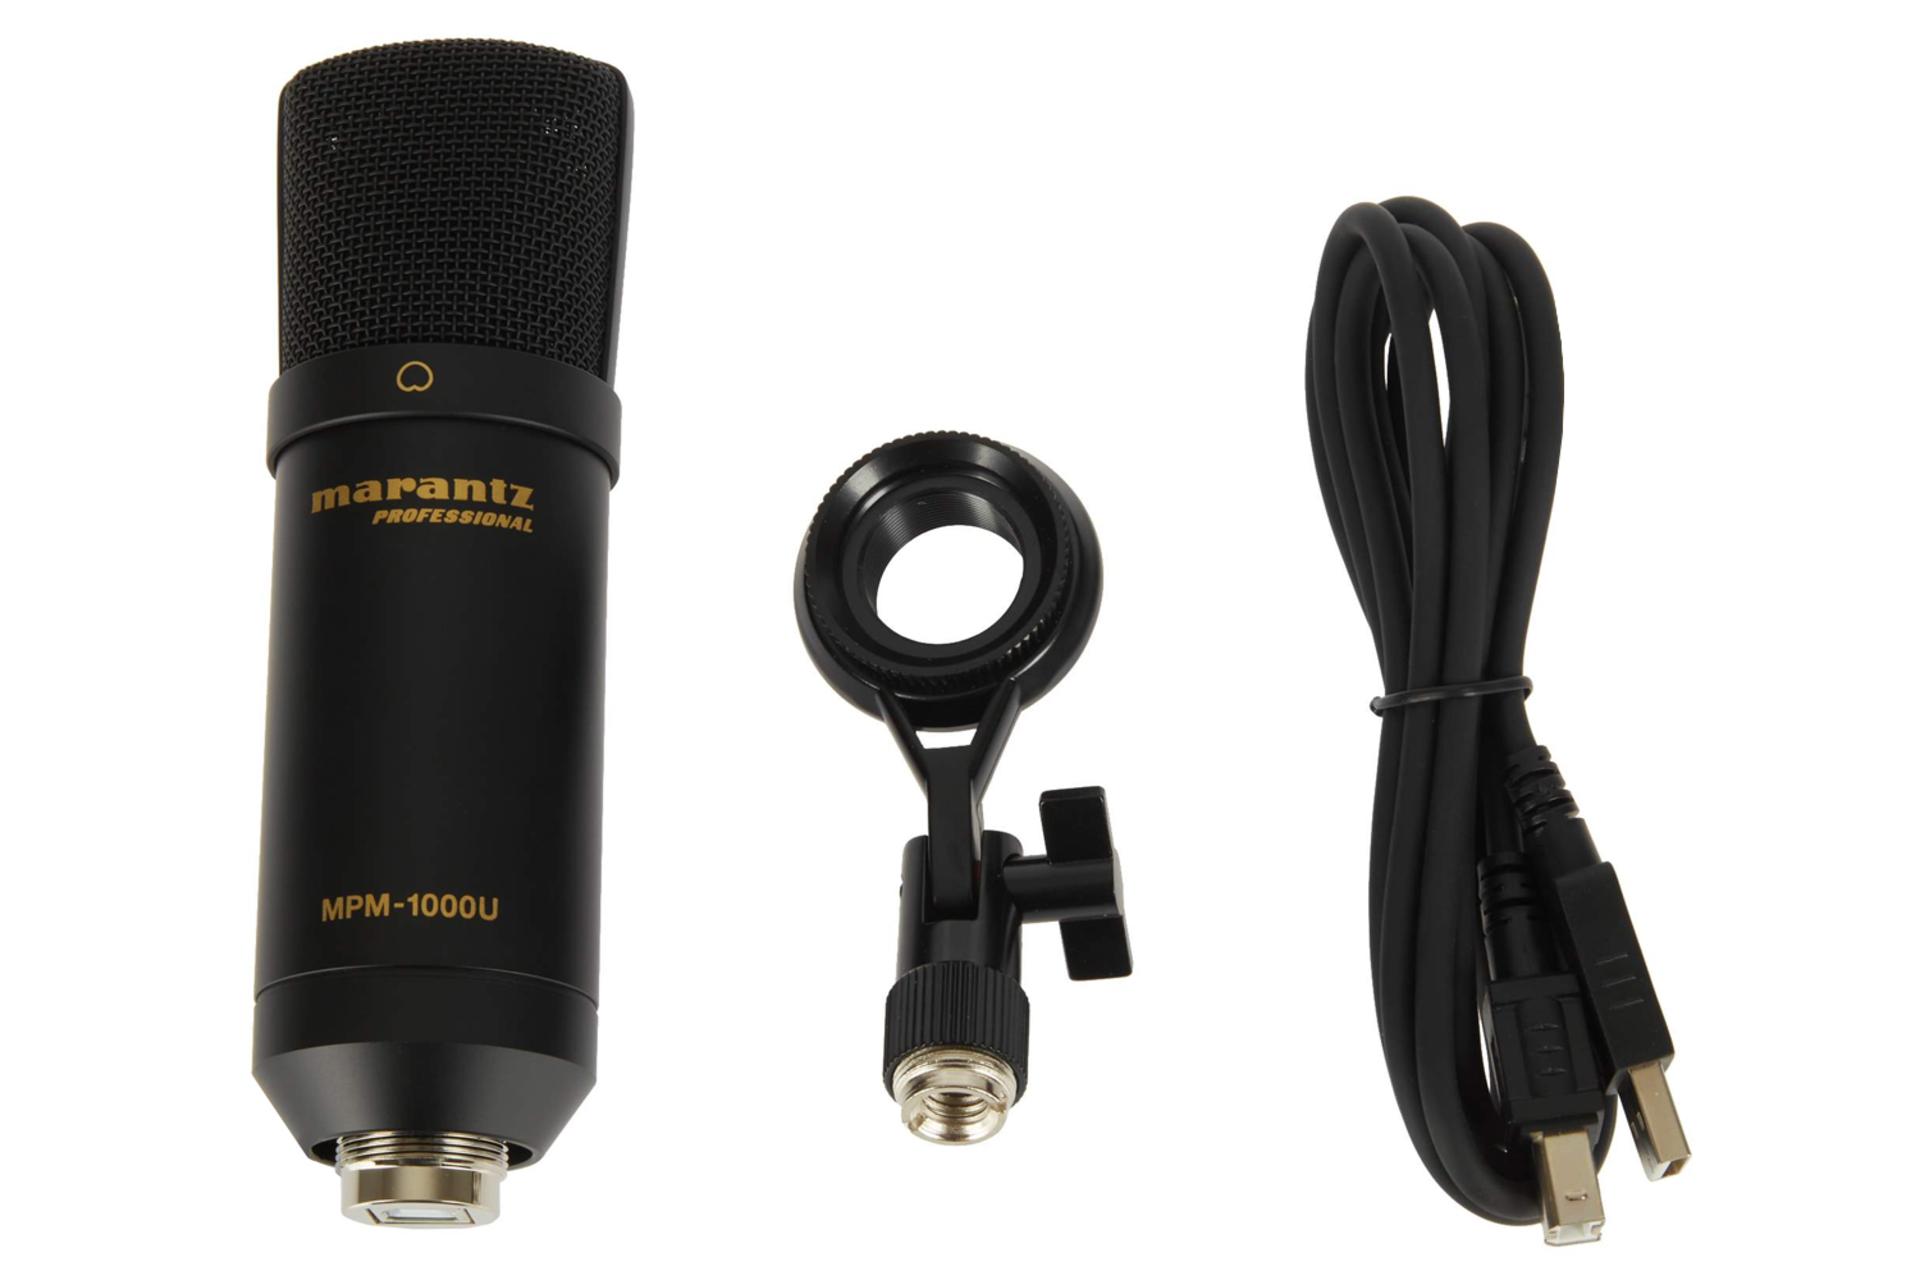 اقلام همراه میکروفون مارانتز پرو Marantz Pro MPM-1000U